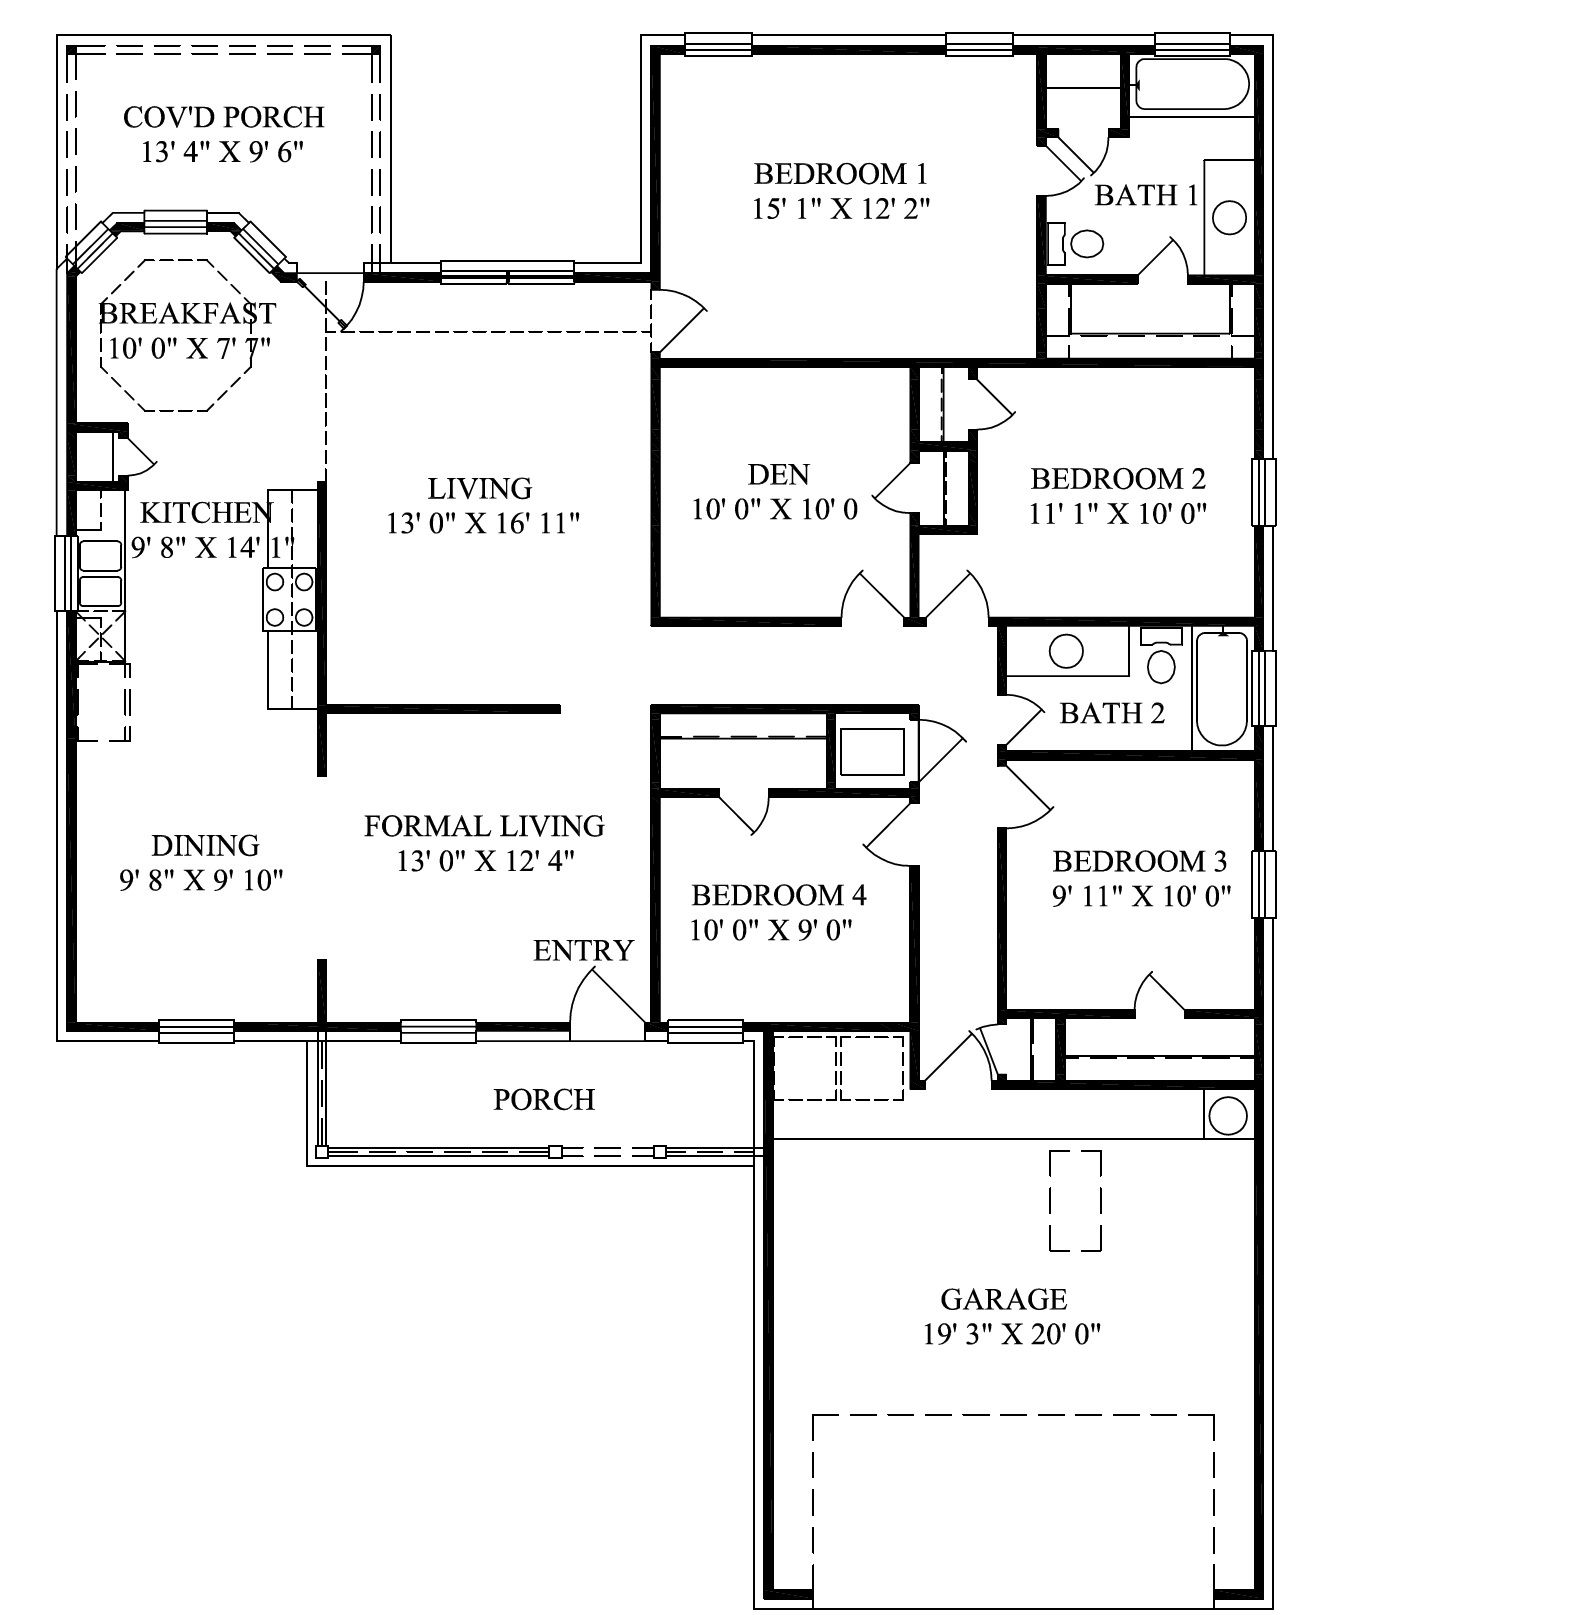 Mercedes Homes Floor Plans 2004 Floor plans, House floor